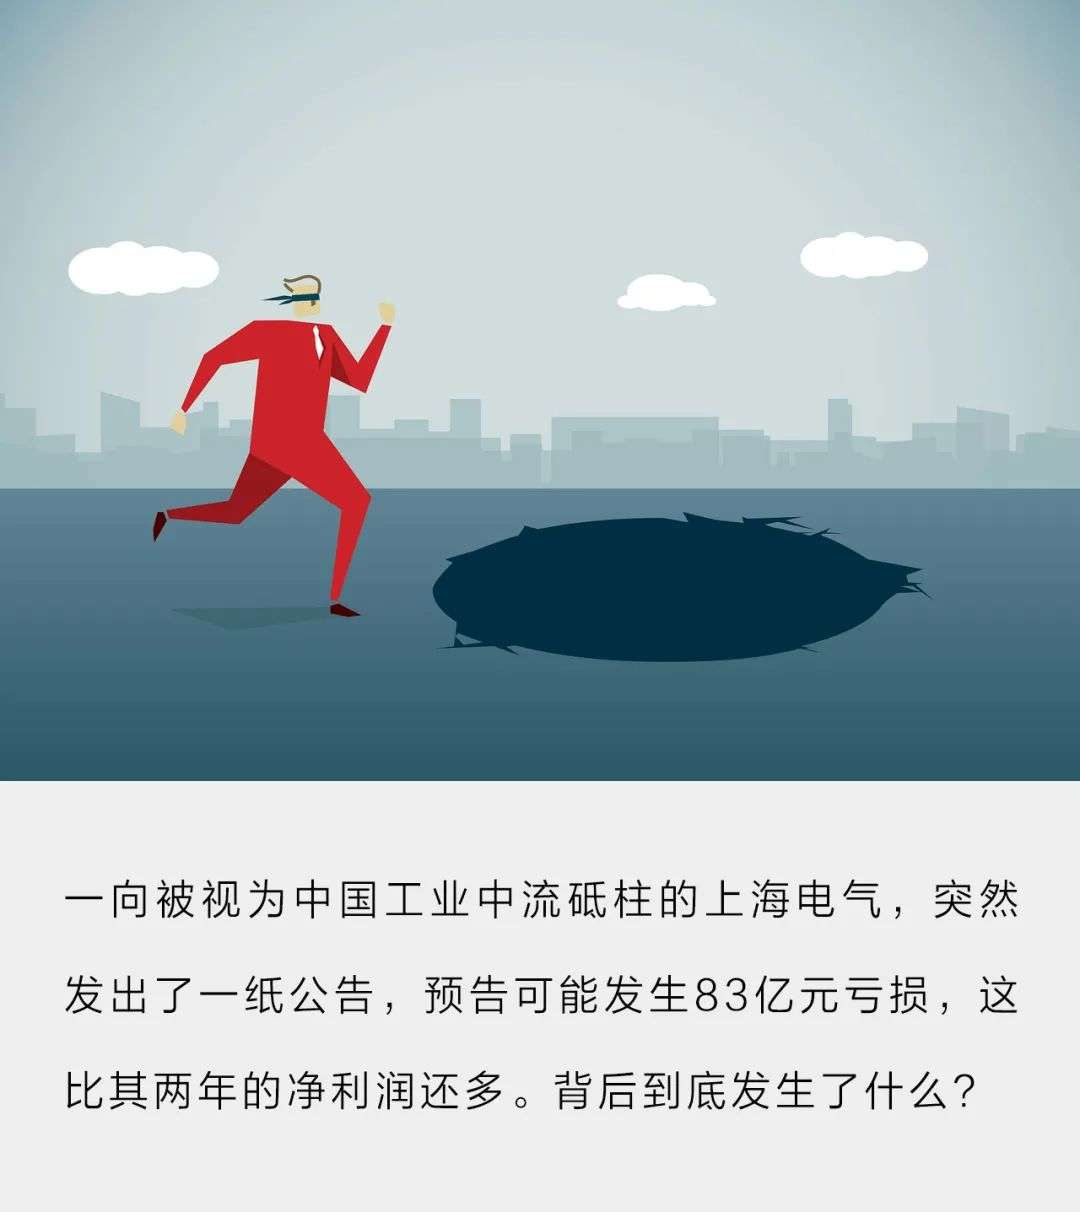 上海电气83亿财务黑洞